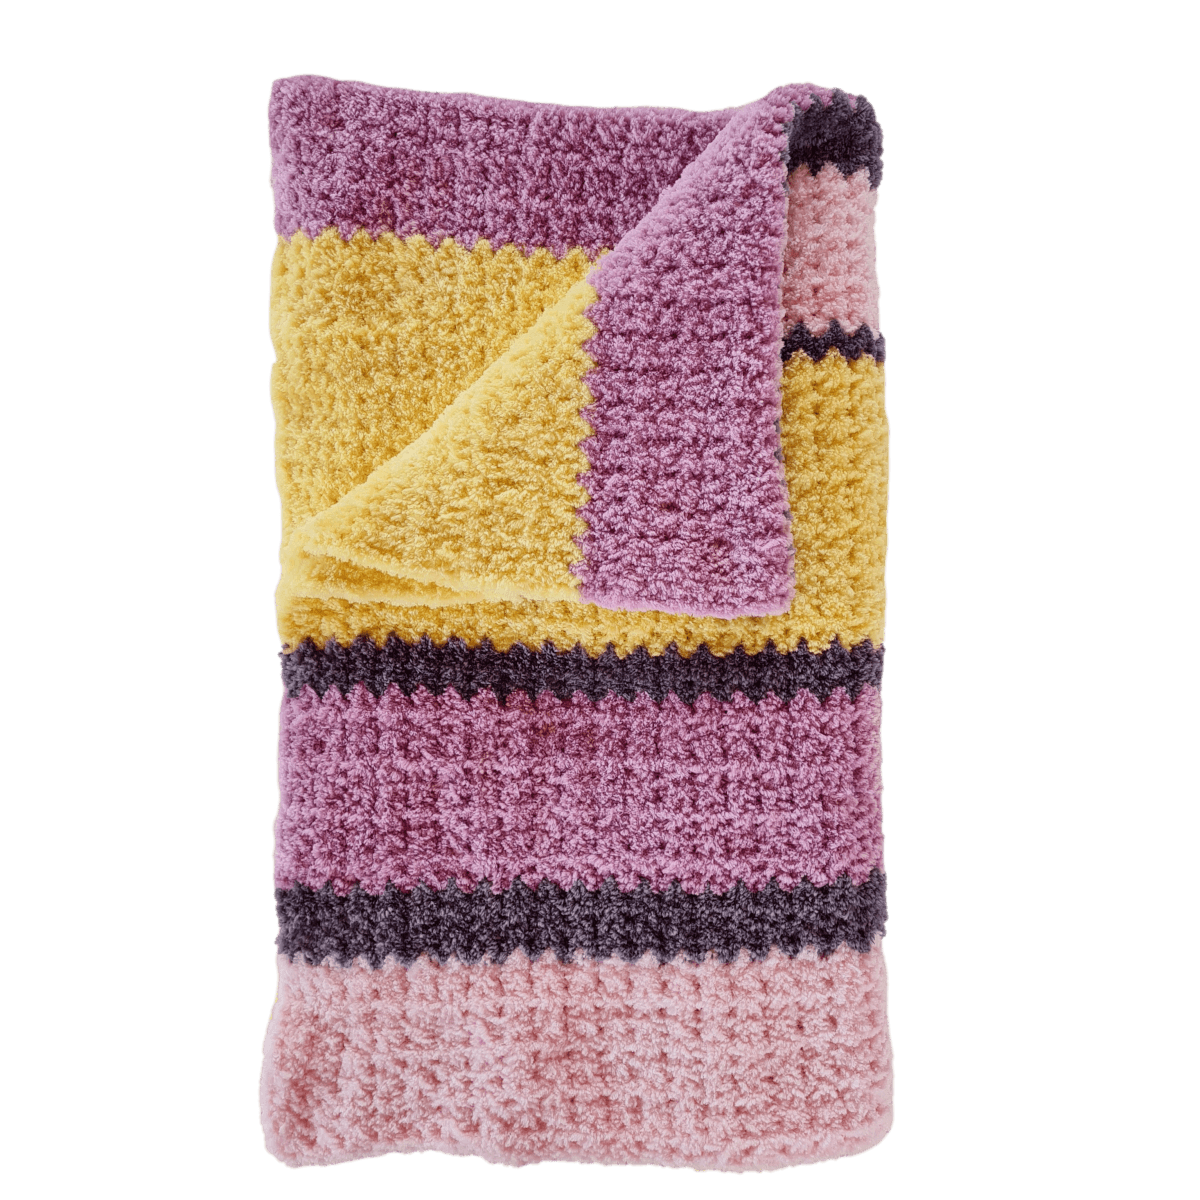 Easy Cuddly Crochet Baby Blanket with Fuzzy Yarn - Easy to Follow Written Crochet Pattern - The Secret Yarnery